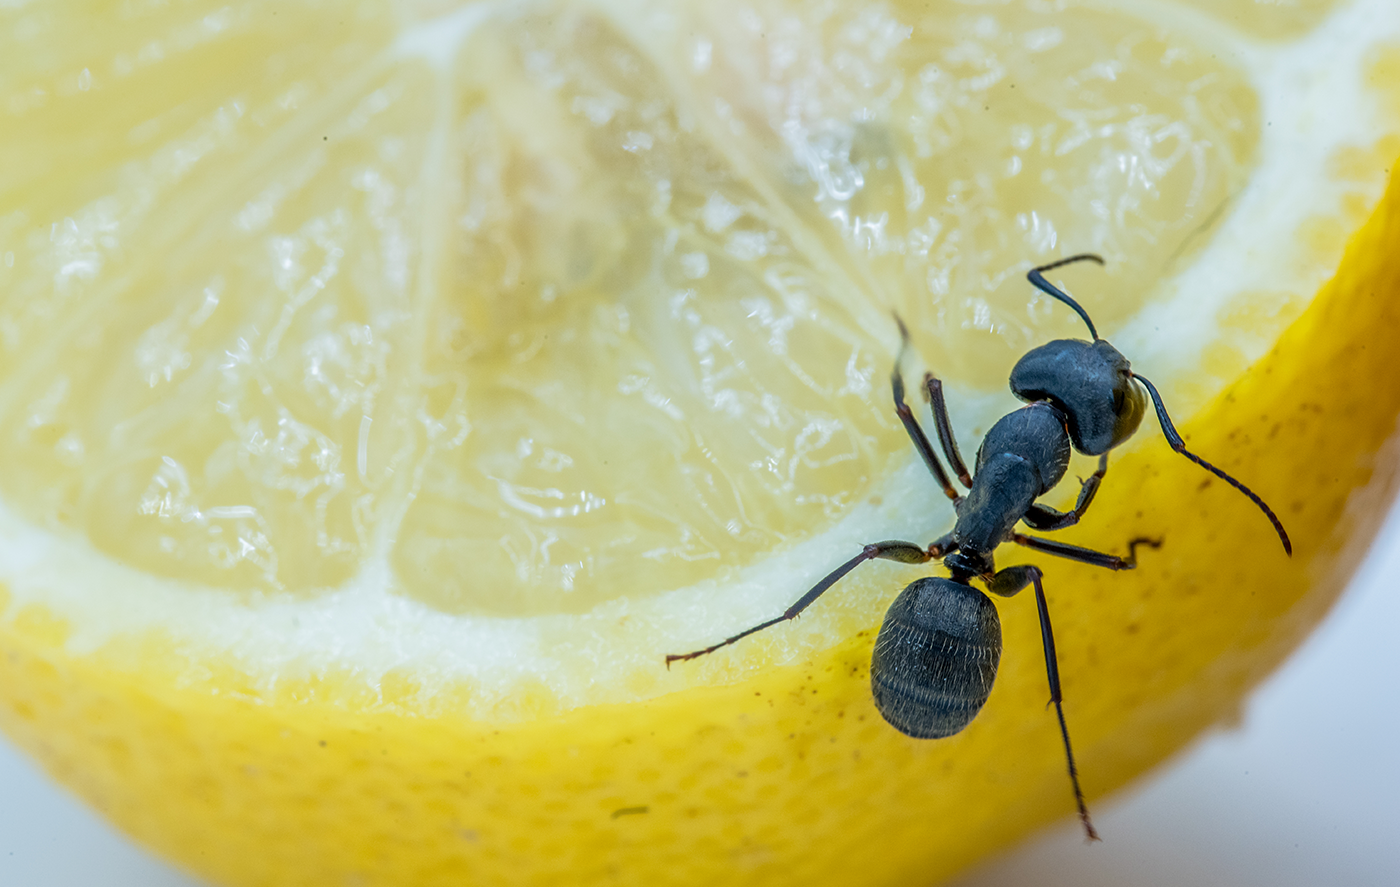 Punya Bau yang Dibenci Semut, Ini 5 Bahan Alami yang Bisa Membantu Mengusir Semut di Rumah